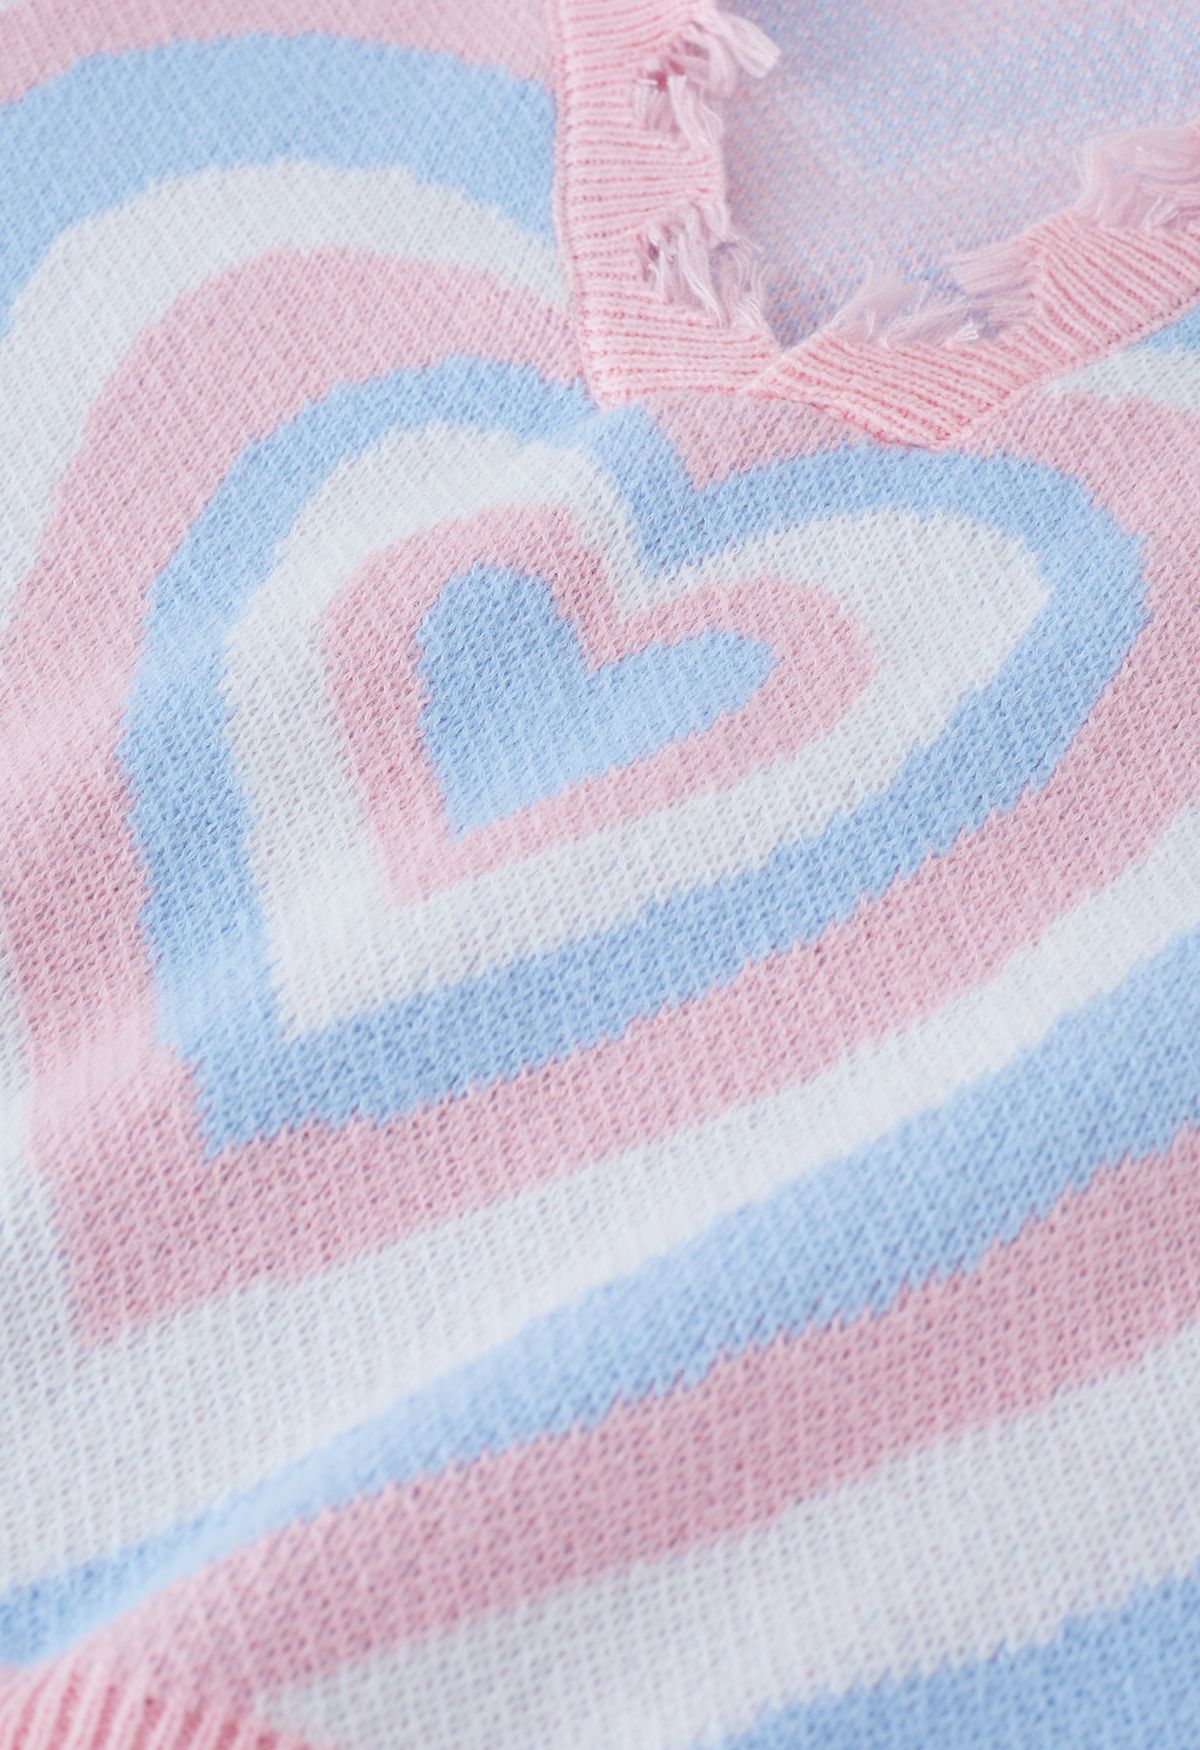 Suéter de punto con borde deshilachado de corazón multicapa en azul